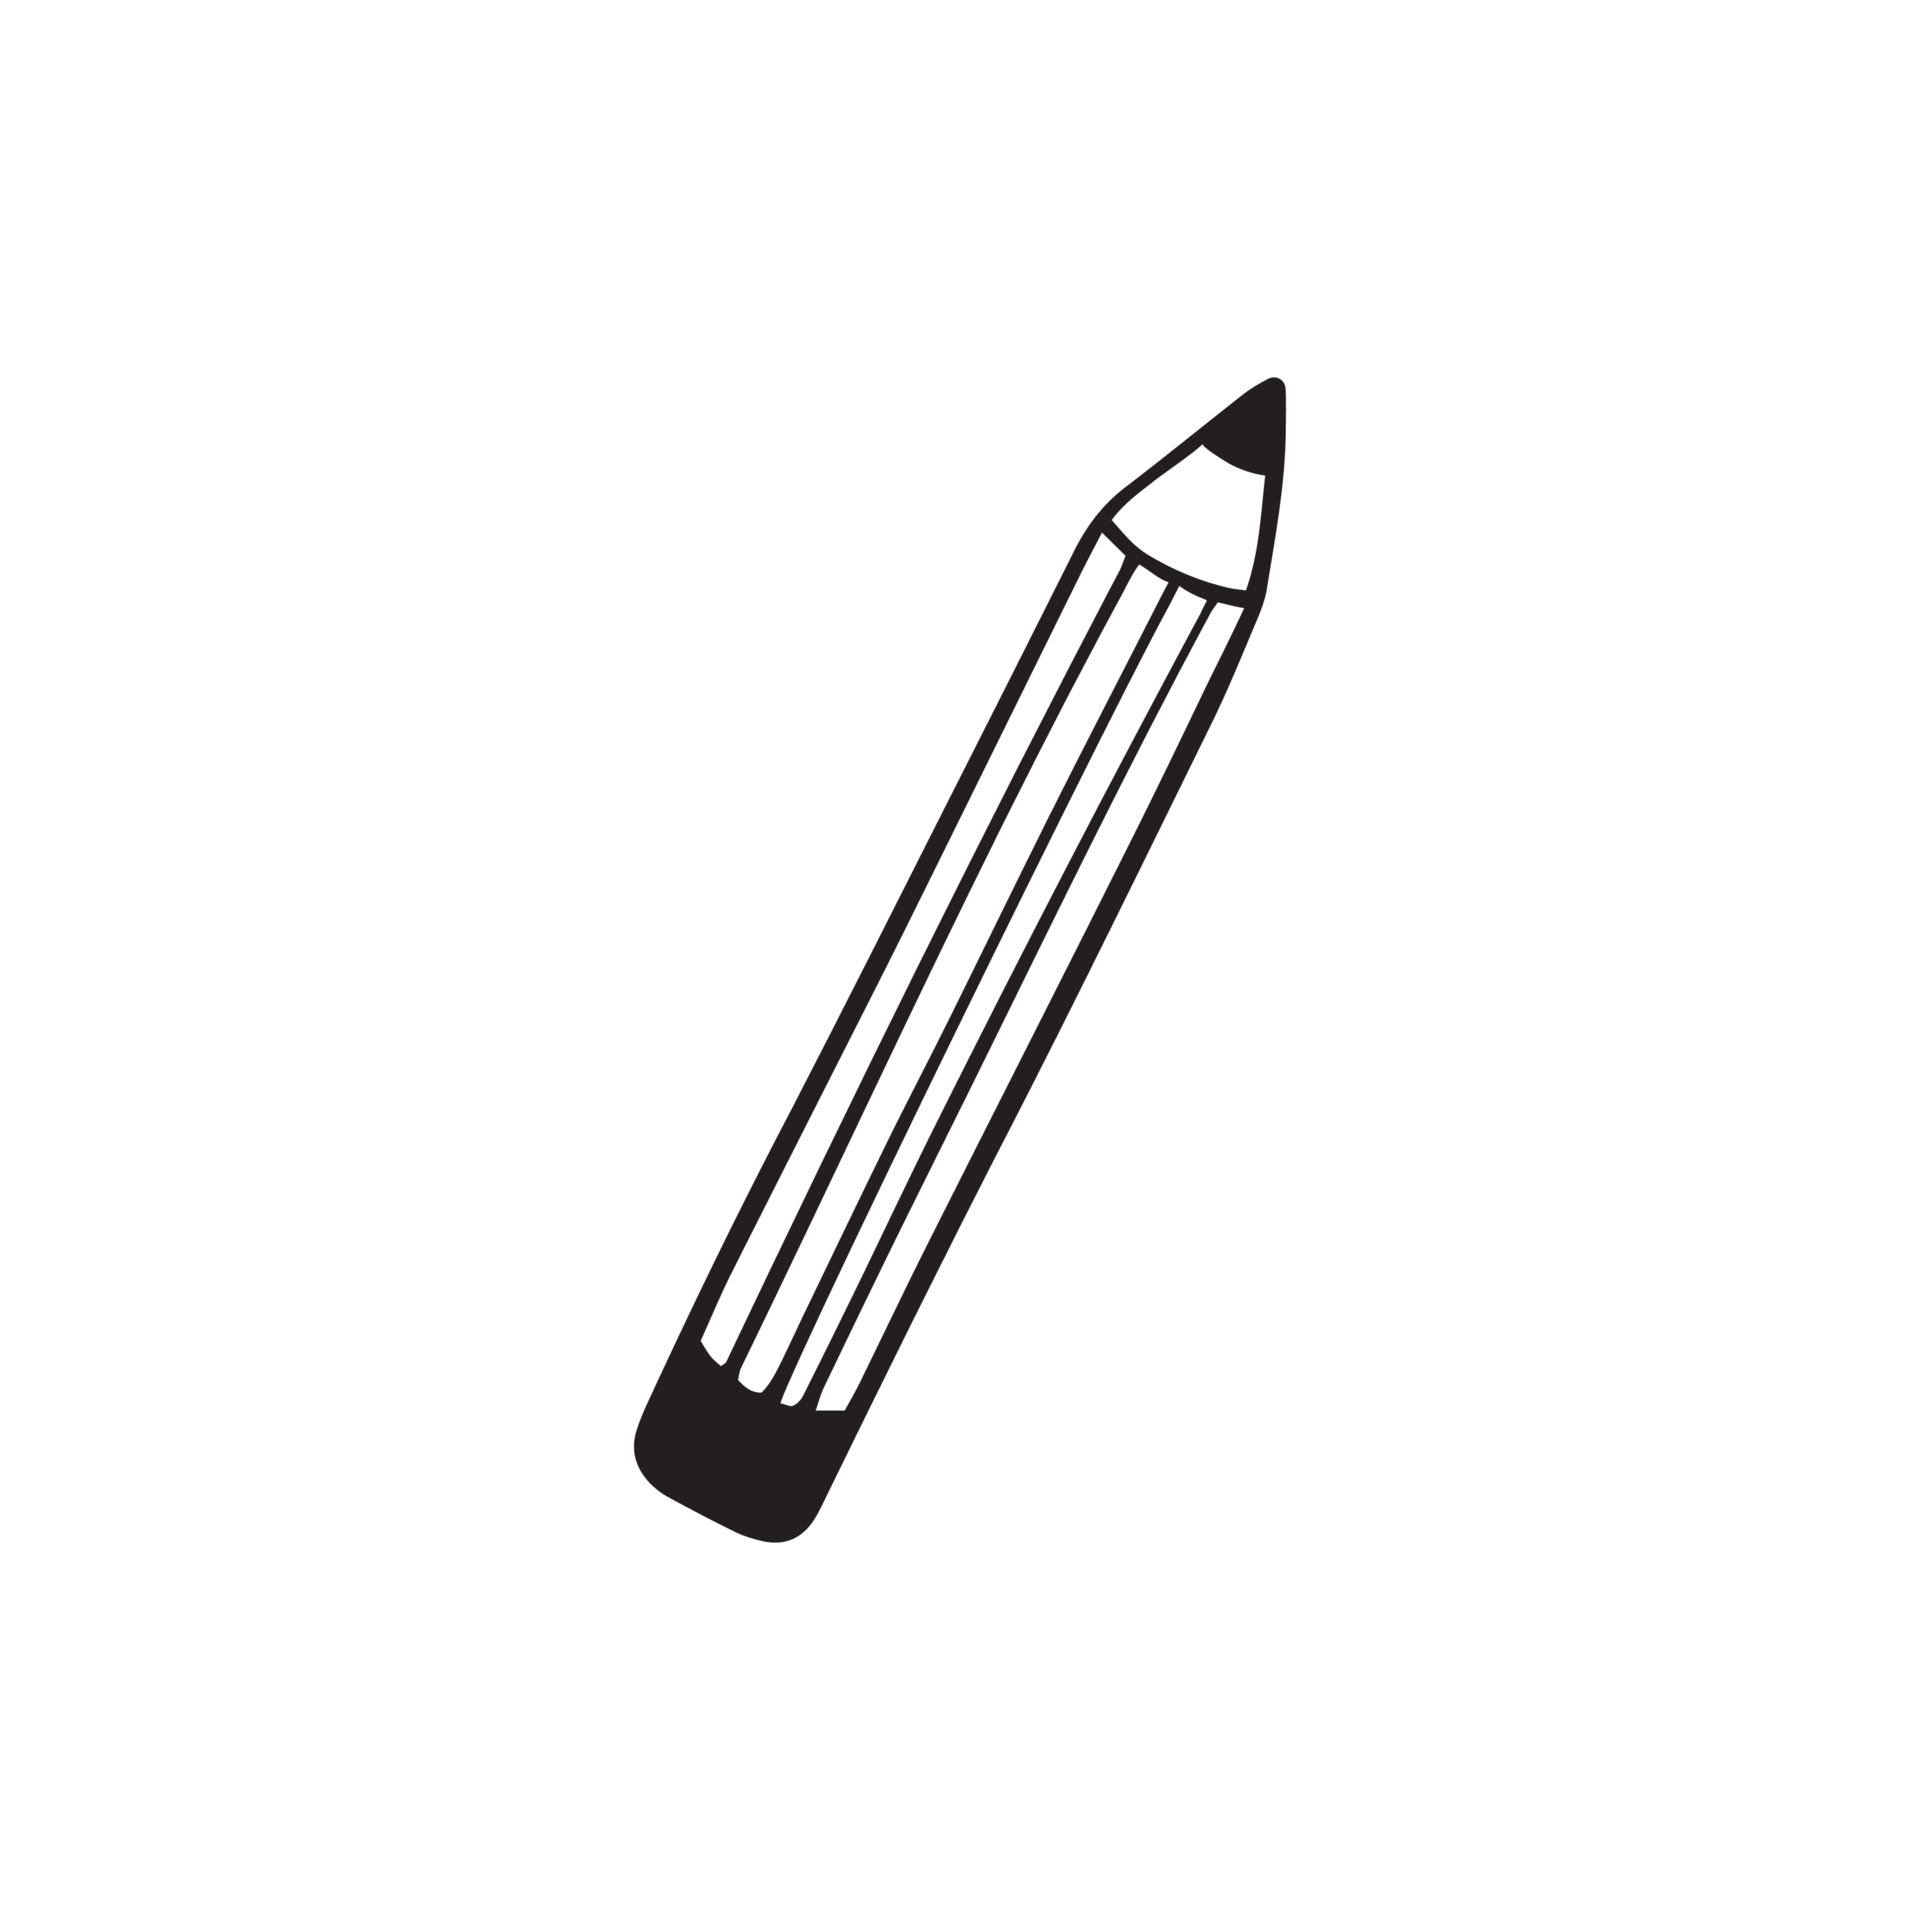 dessin au crayon noir et blanc : image vectorielle de stock (libre de  droits) 413052619